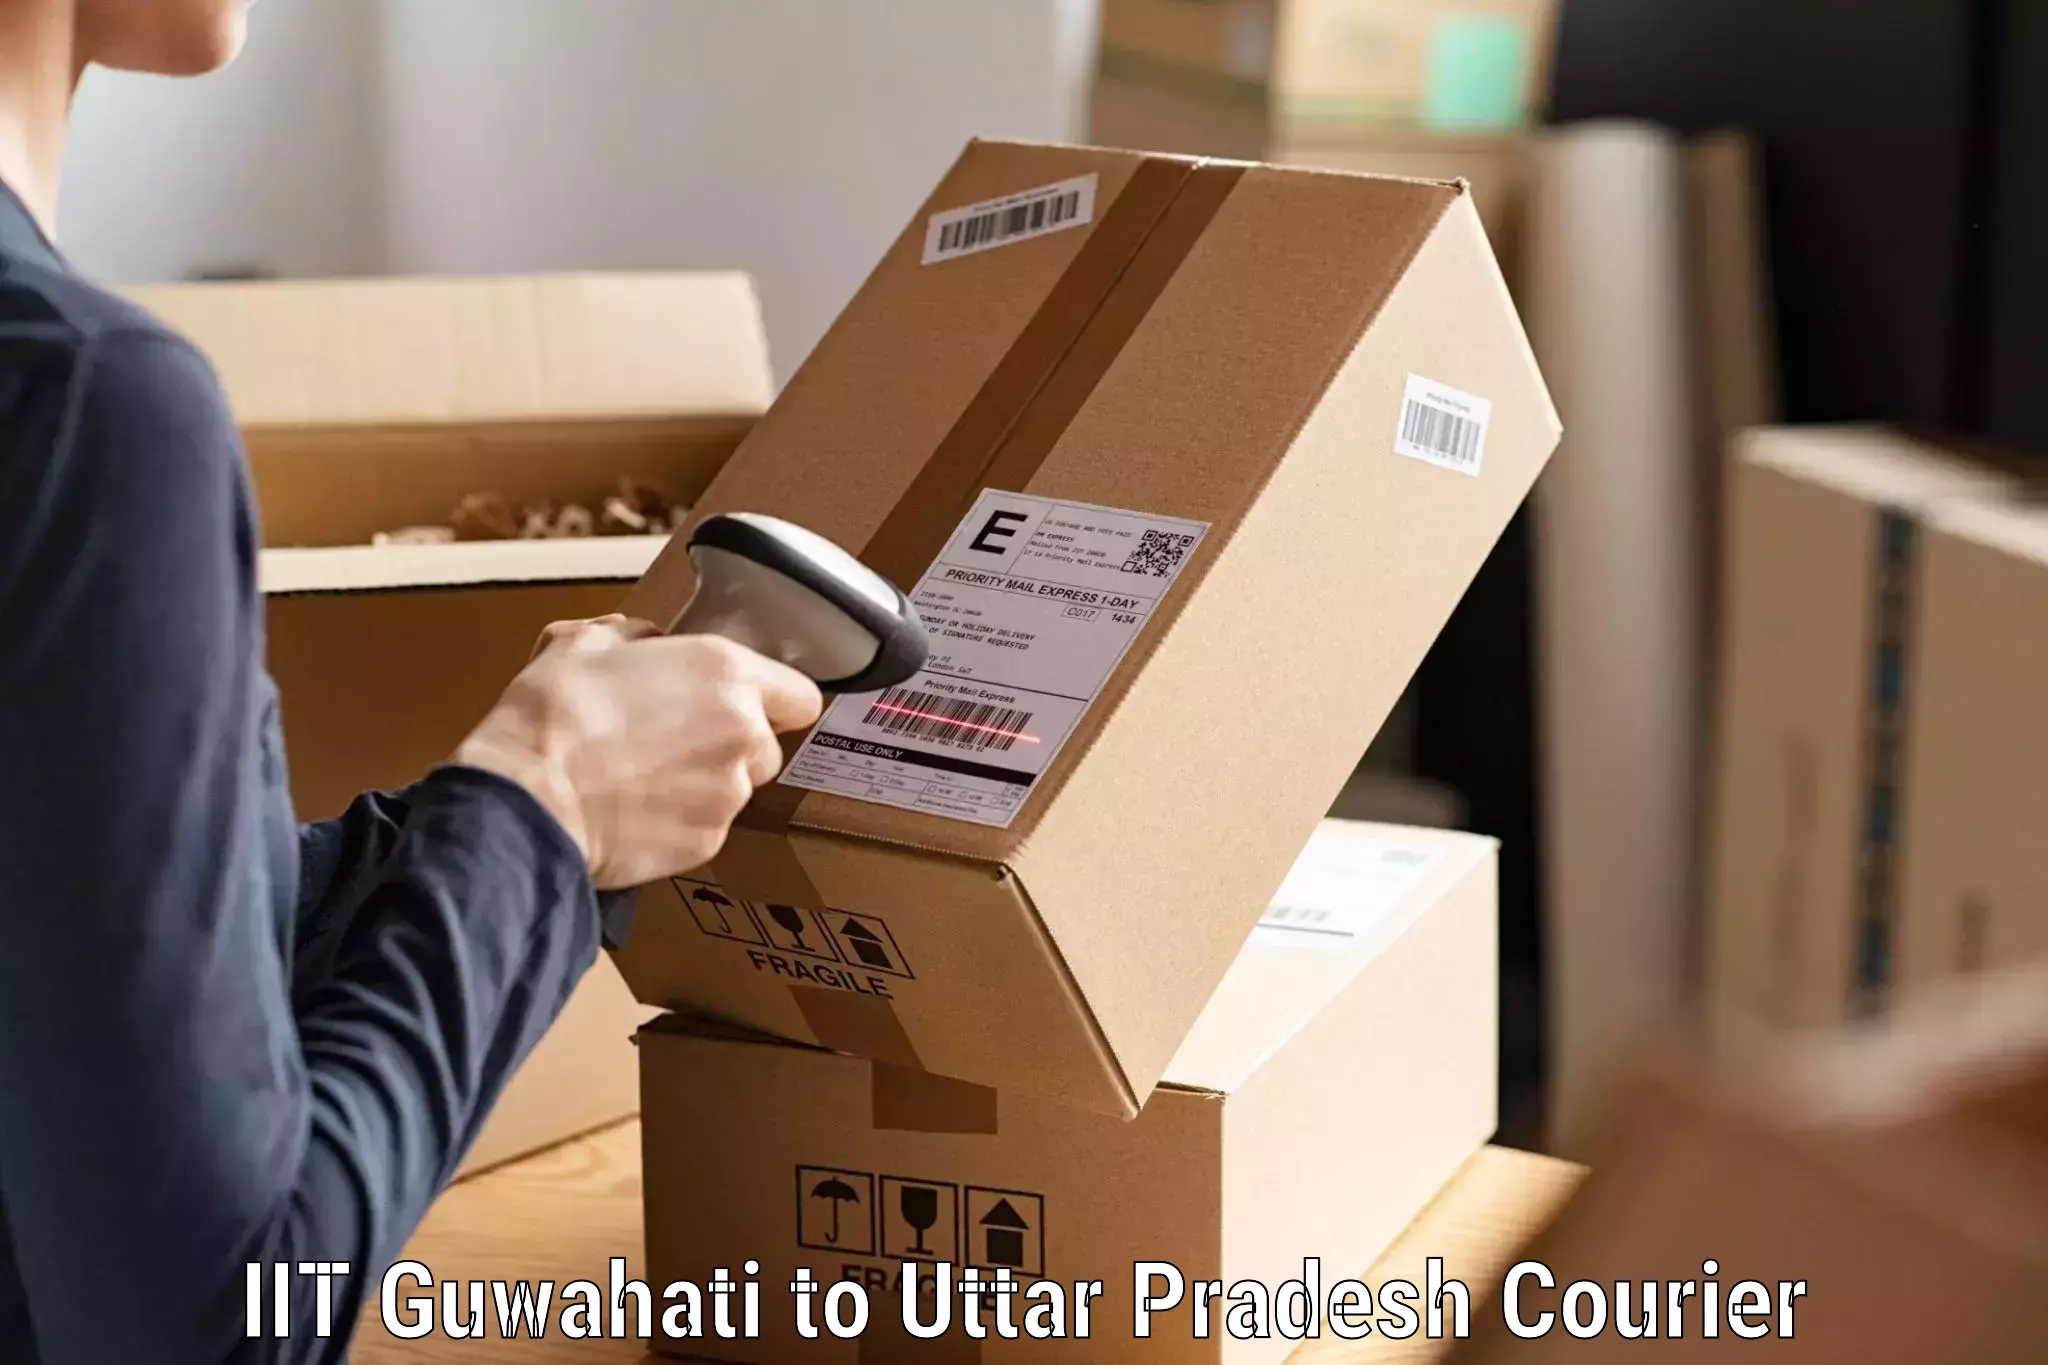 Courier service comparison IIT Guwahati to Chhutmalpur